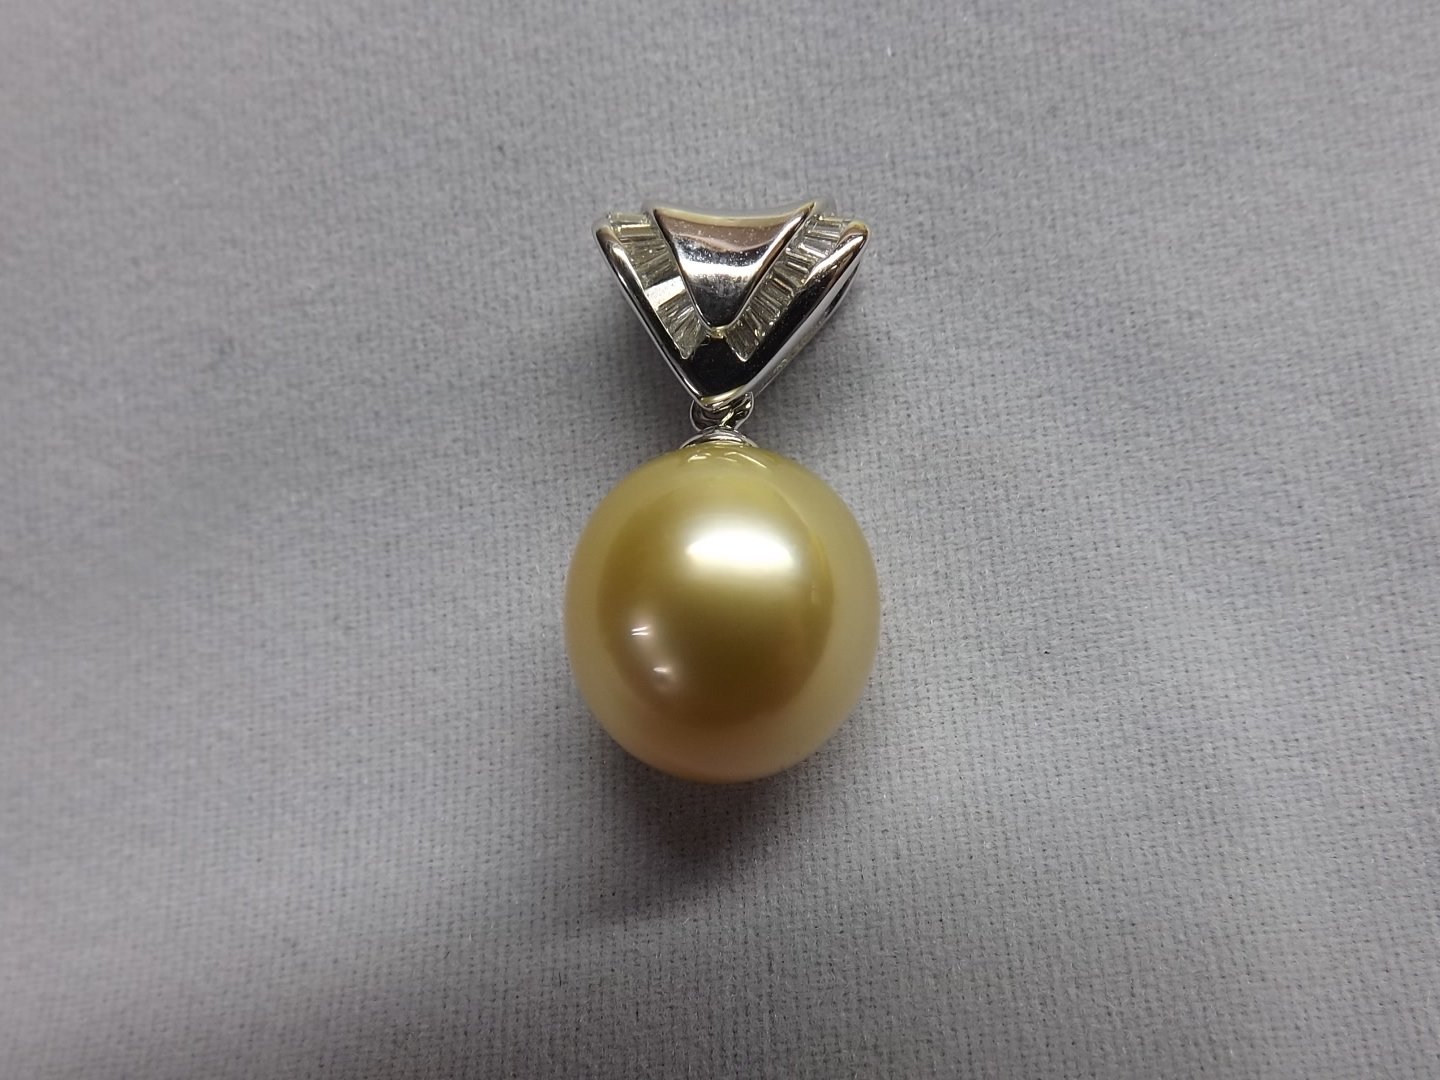 【楽天市場】【送料無料】 K18WG ペンダント トップ 南洋真珠 ダイヤモンド #17 南洋パール 真珠 パール Pearl ダイヤ